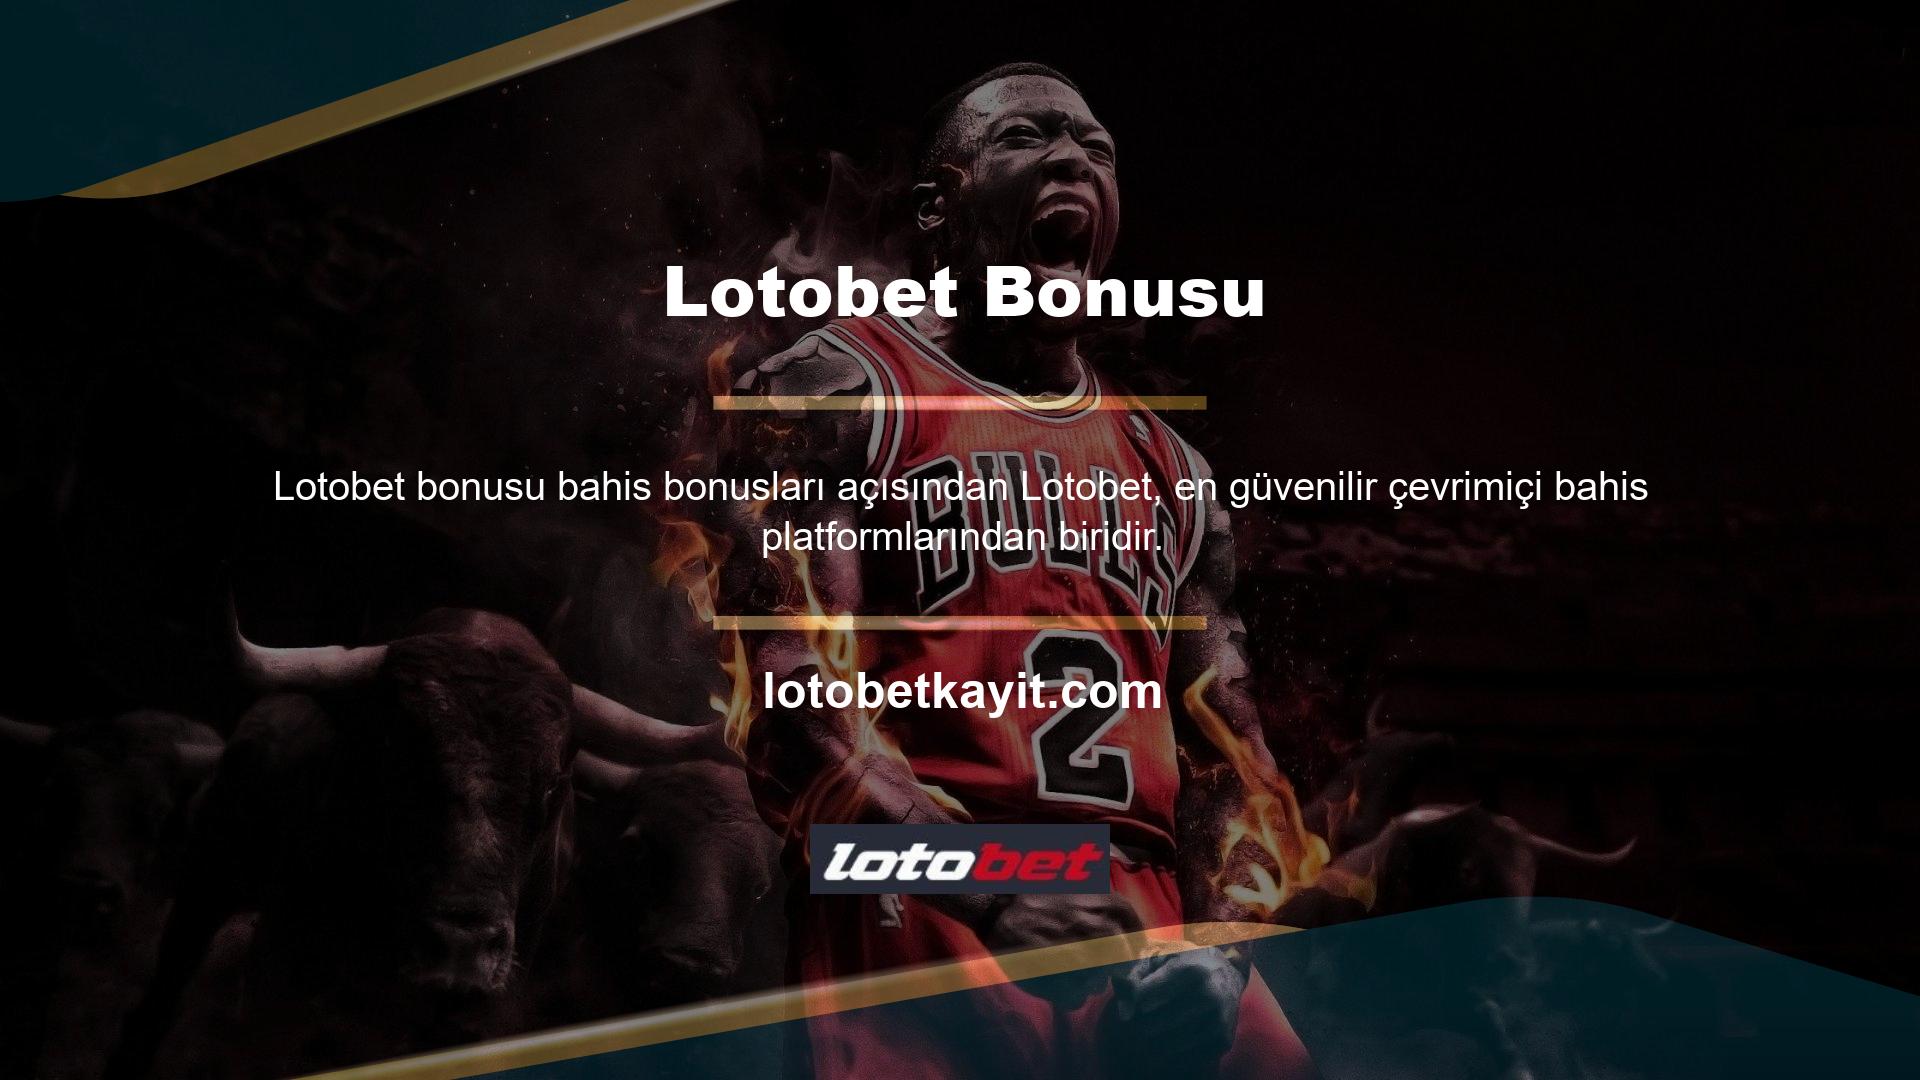 Aynı şekilde Lotobet bonusu da yeni oyunculara verdiği ilk ödüller arasında yer alıyor